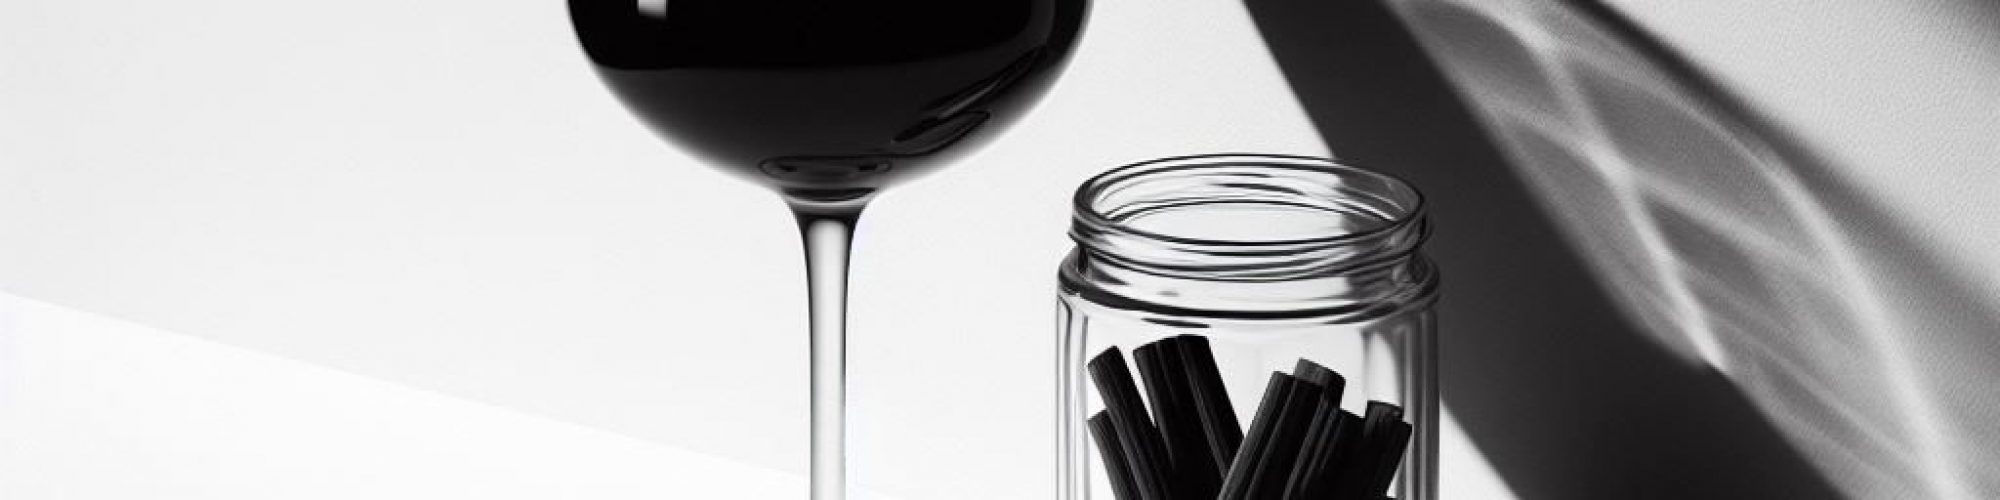 Lakritze und Weinverkostung als schwarz weißes Bild dargestellt